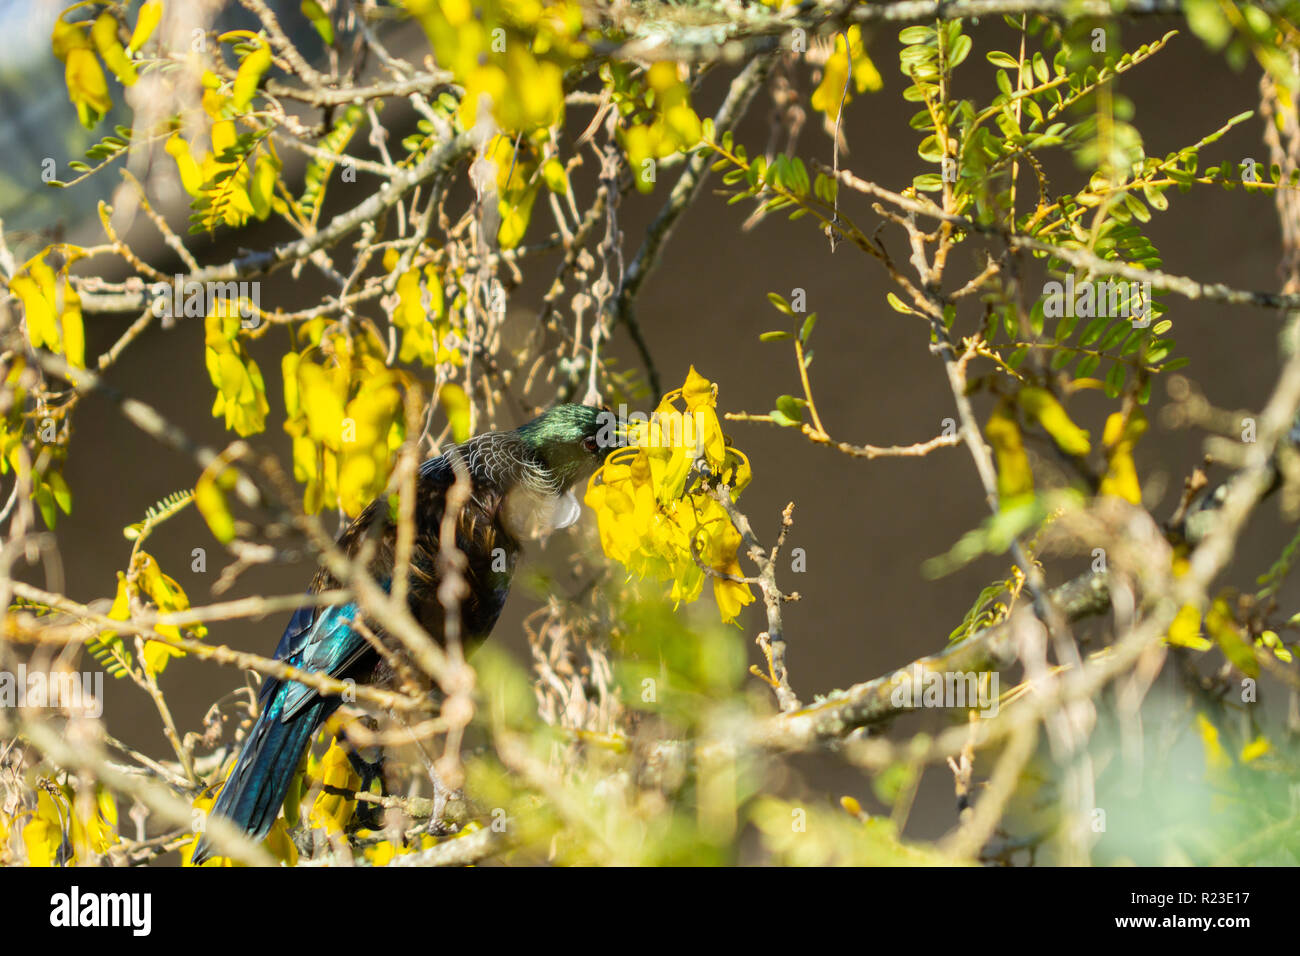 Nativo di Tui Nuova Zelanda bird feed su nectar su fiori gialli in una struttura ad albero kowhai in primavera a fuoco selettivo. Foto Stock